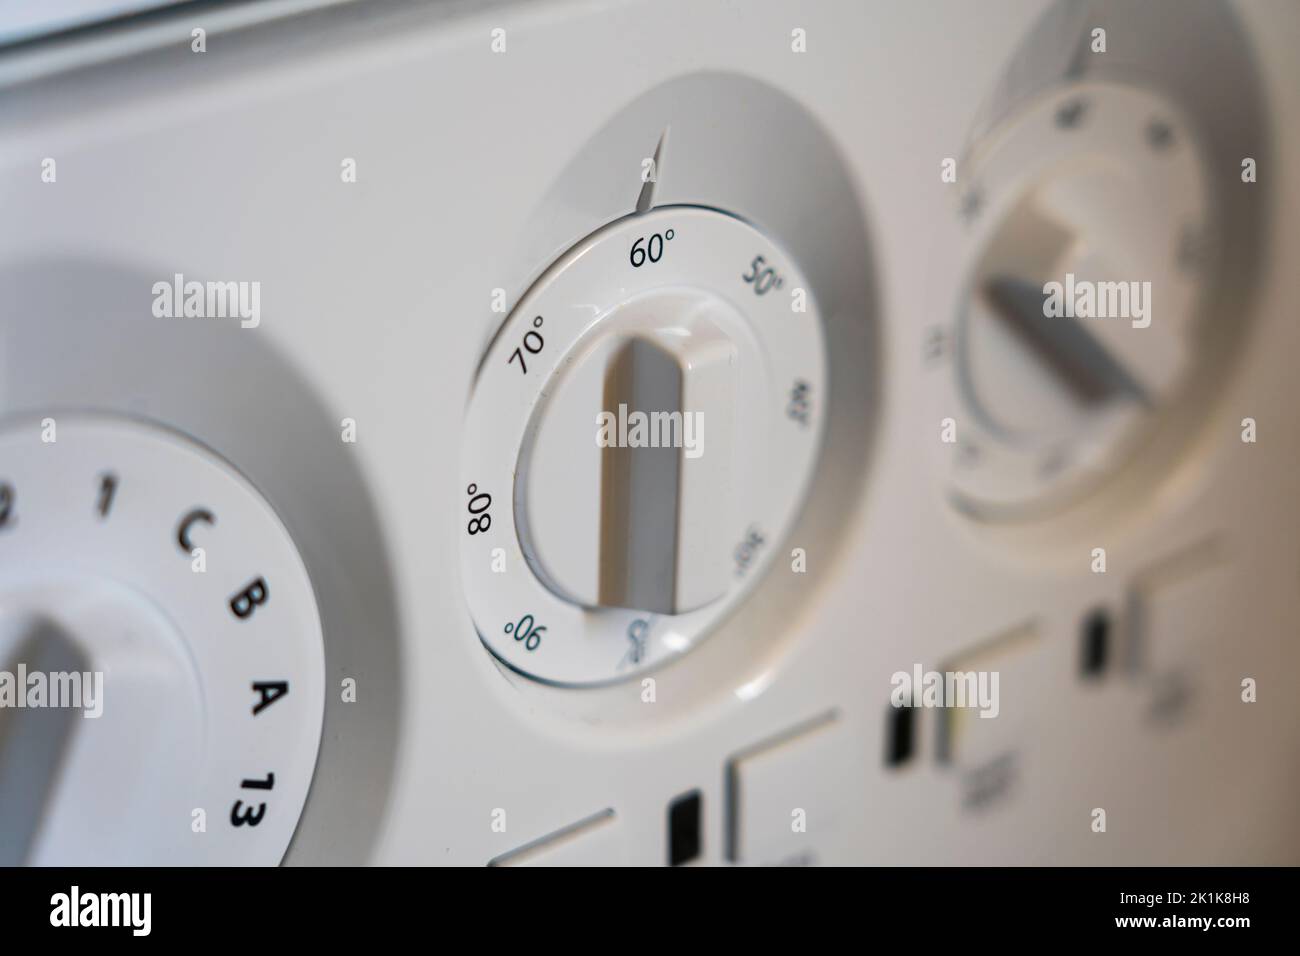 Primer plano de los botones y diales de una lavadora. Concepto - hacer la colada, ahorro de energía, precio de la electricidad, demanda pico, eficiencia energética Foto de stock